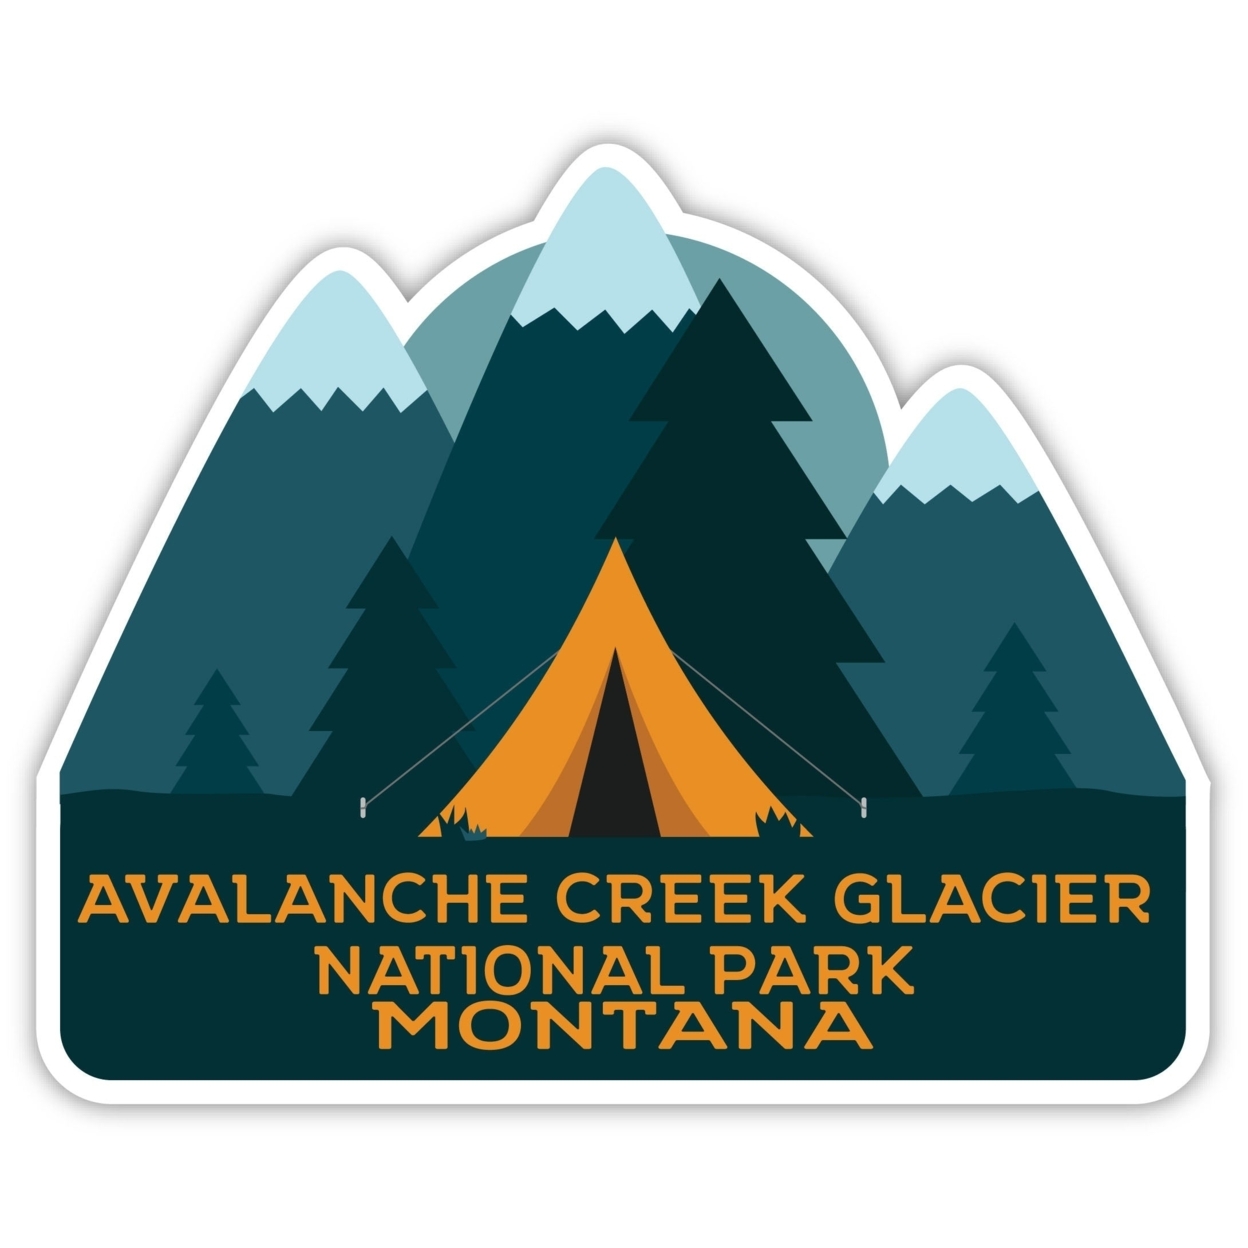 Avalanche Creek Glacier National Park Montana Souvenir Decorative Stickers (Choose Theme And Size) - Single Unit, 10-Inch, Tent